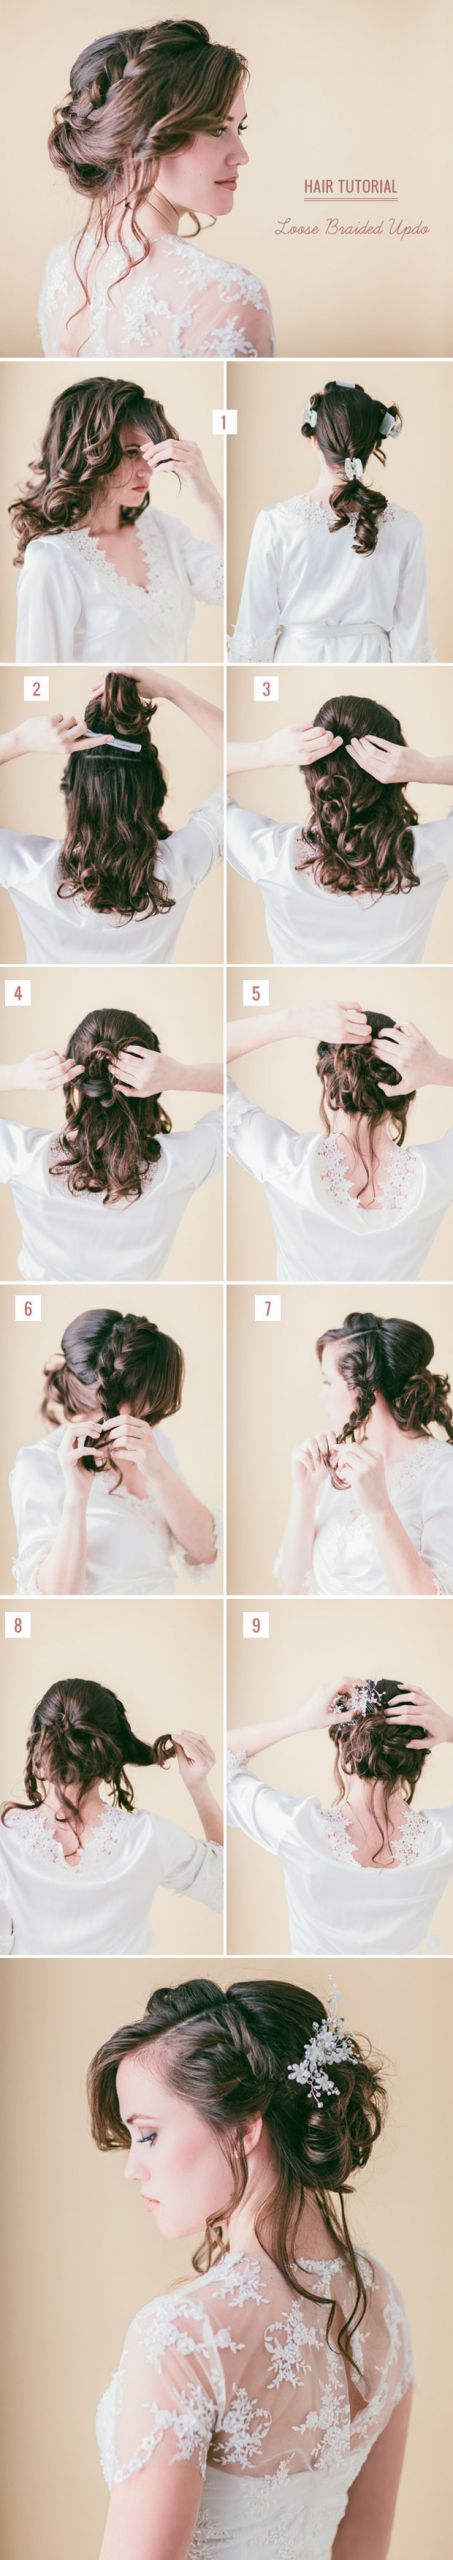 DIY Wedding Updos
 10 Best DIY Wedding Hairstyles with Tutorials